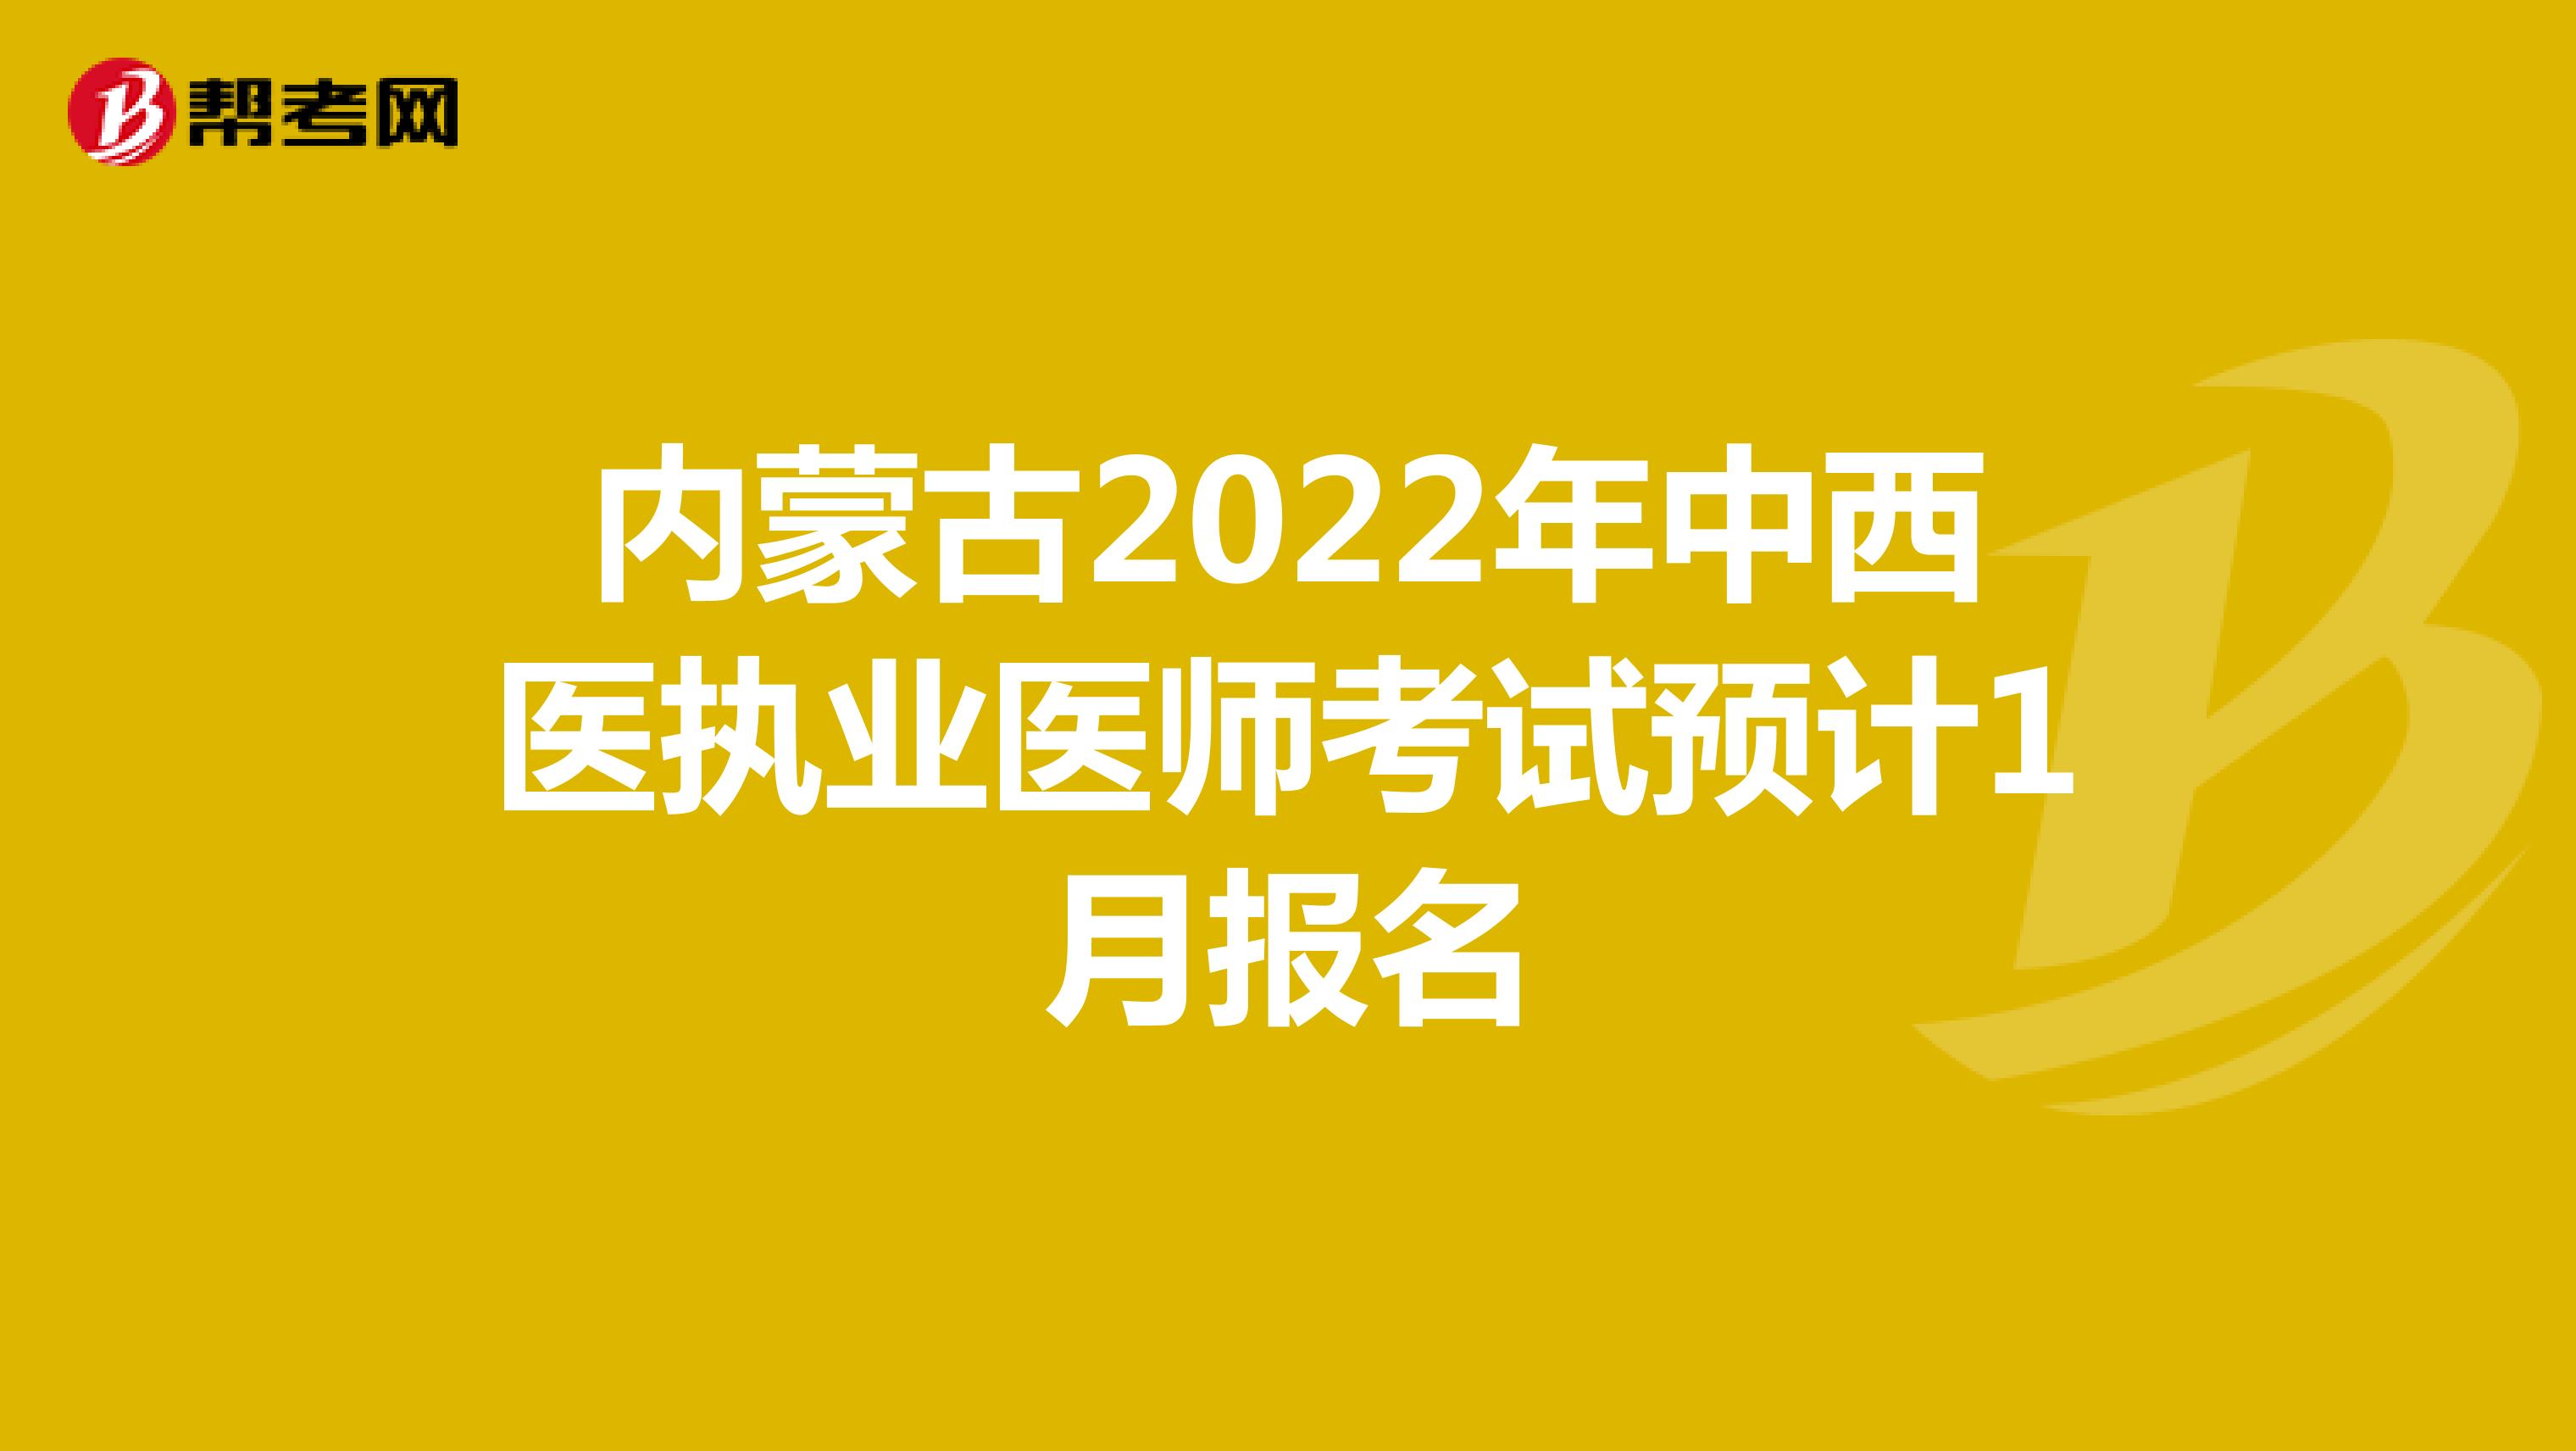 内蒙古2022年中西医执业医师考试预计1月报名